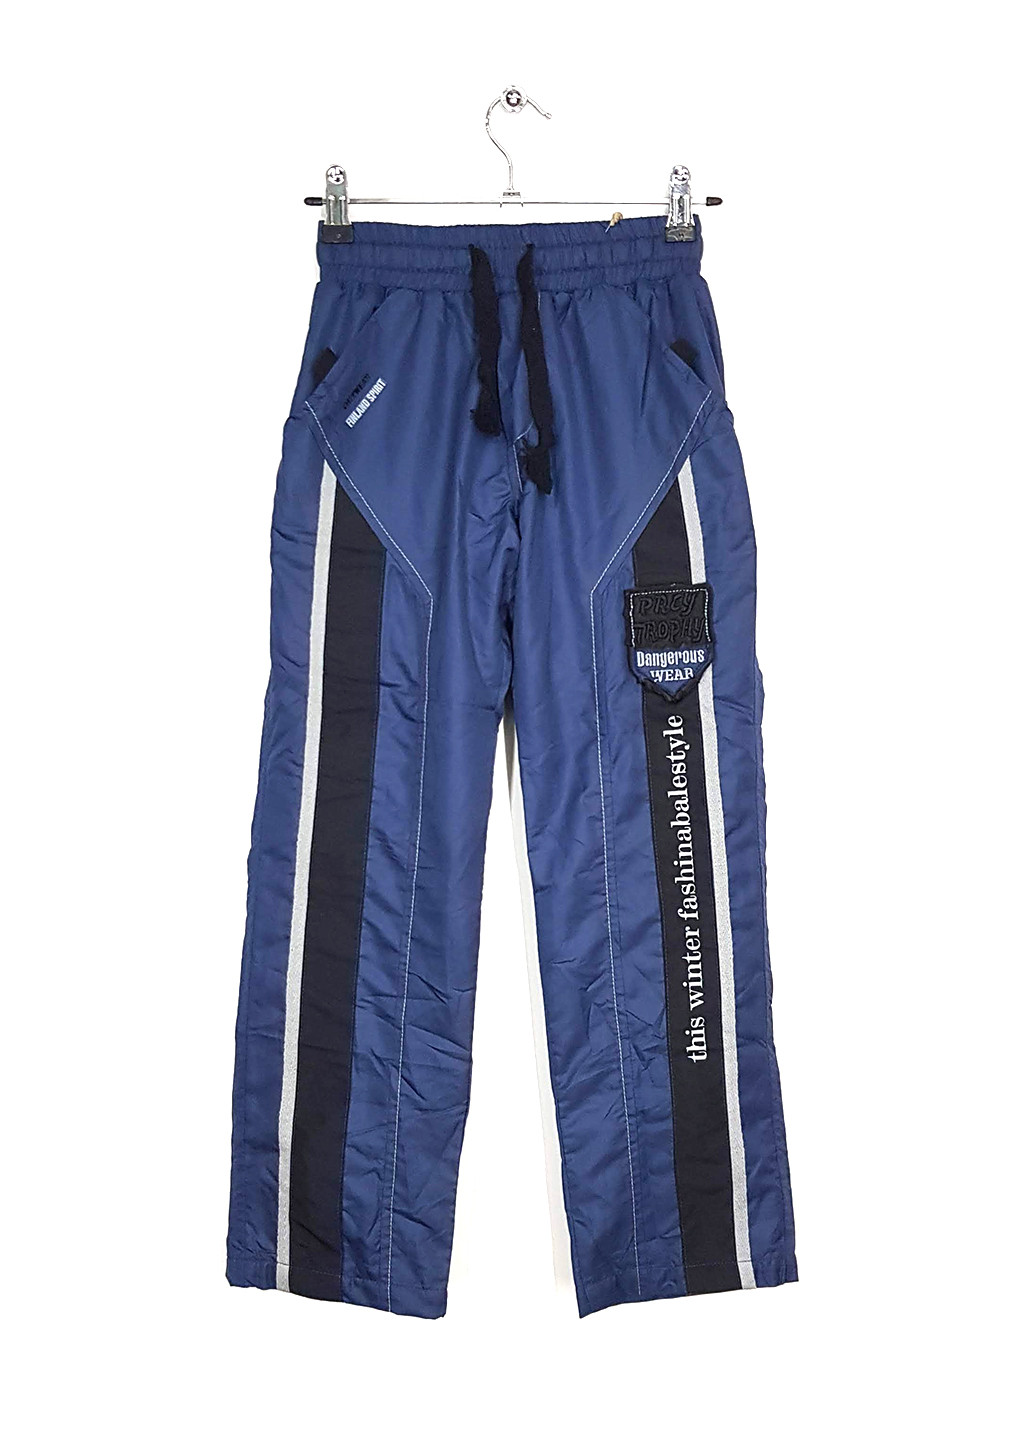 Синие спортивные демисезонные брюки Puledro